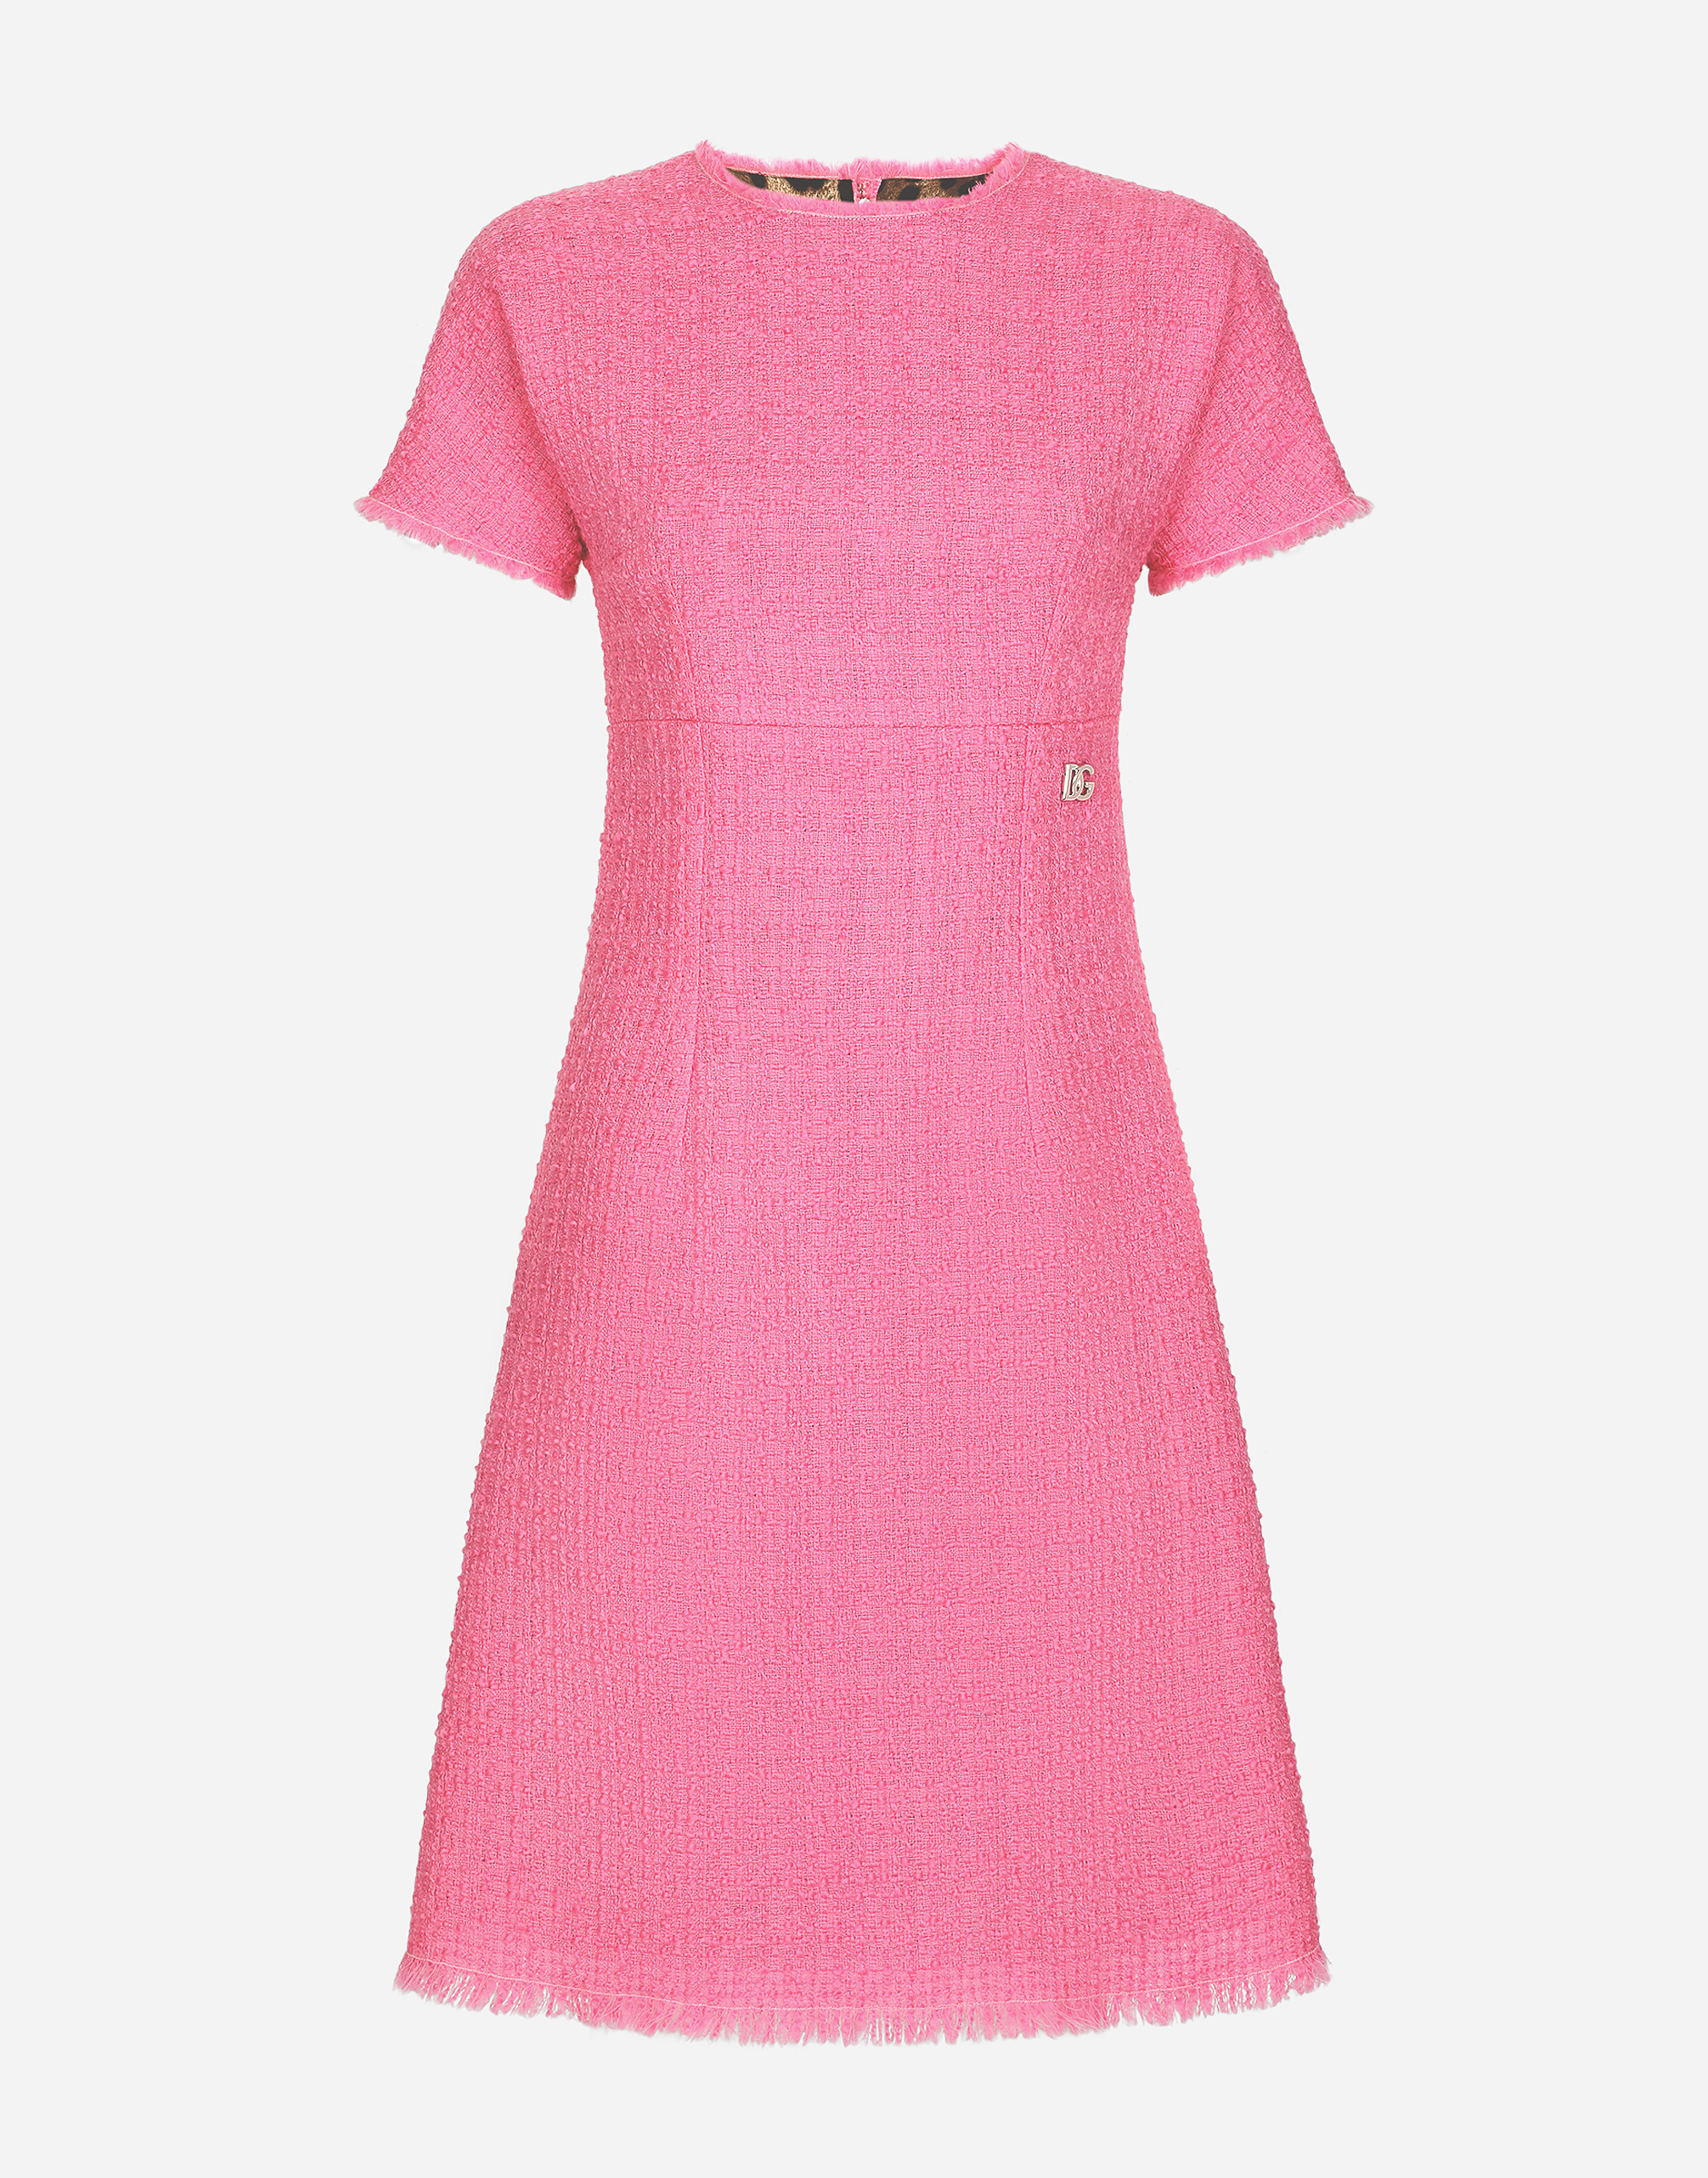 Dolce & Gabbana Raschel Tweed Calf-length Dress With Dg Logo In Pink